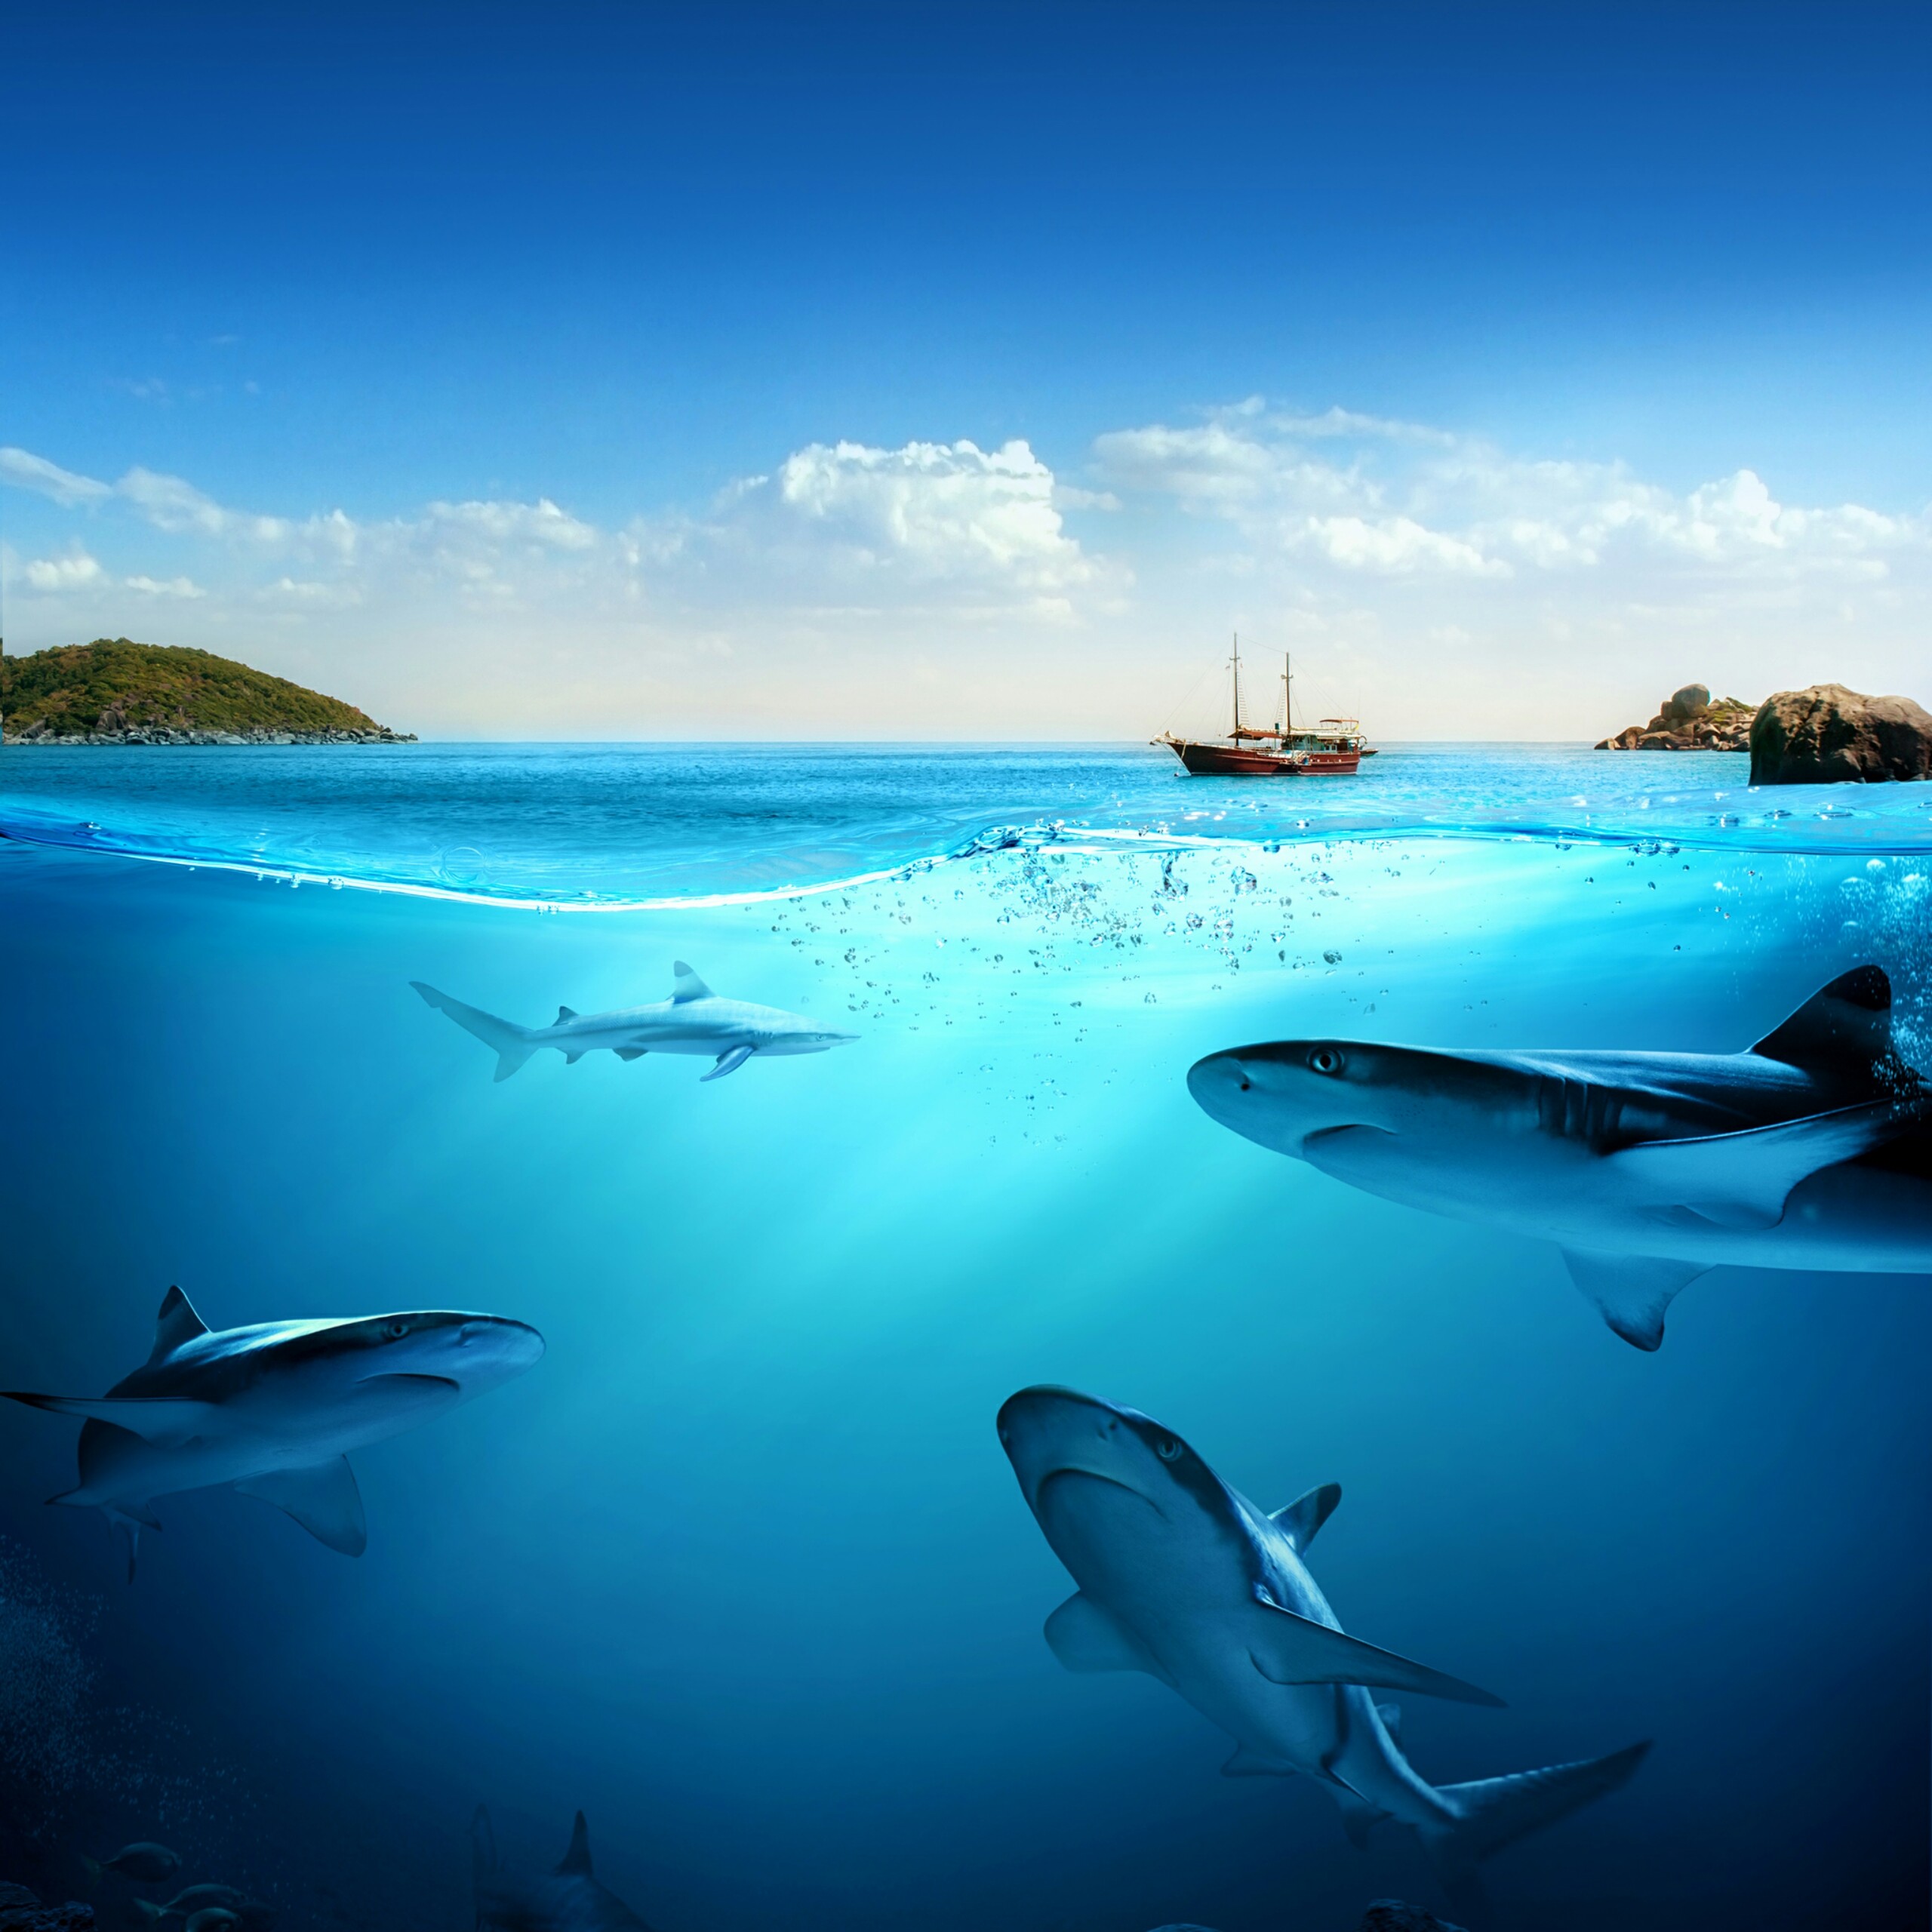 Underwater Wallpapers Ocean Free Images - Cool HD ...